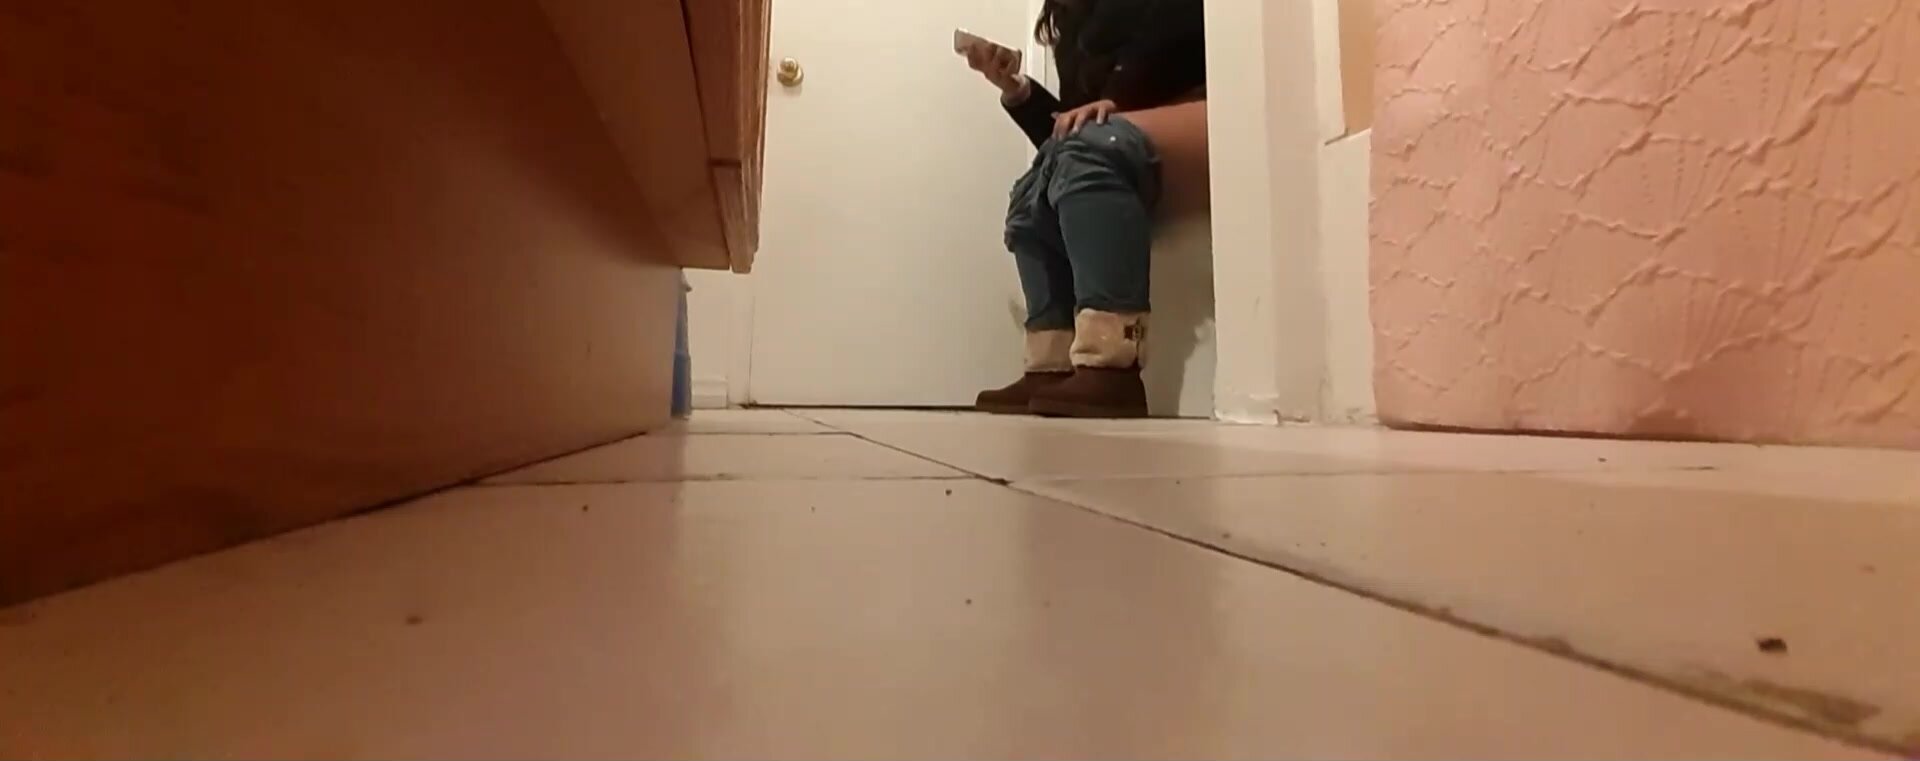 Cousin On Toilet-1